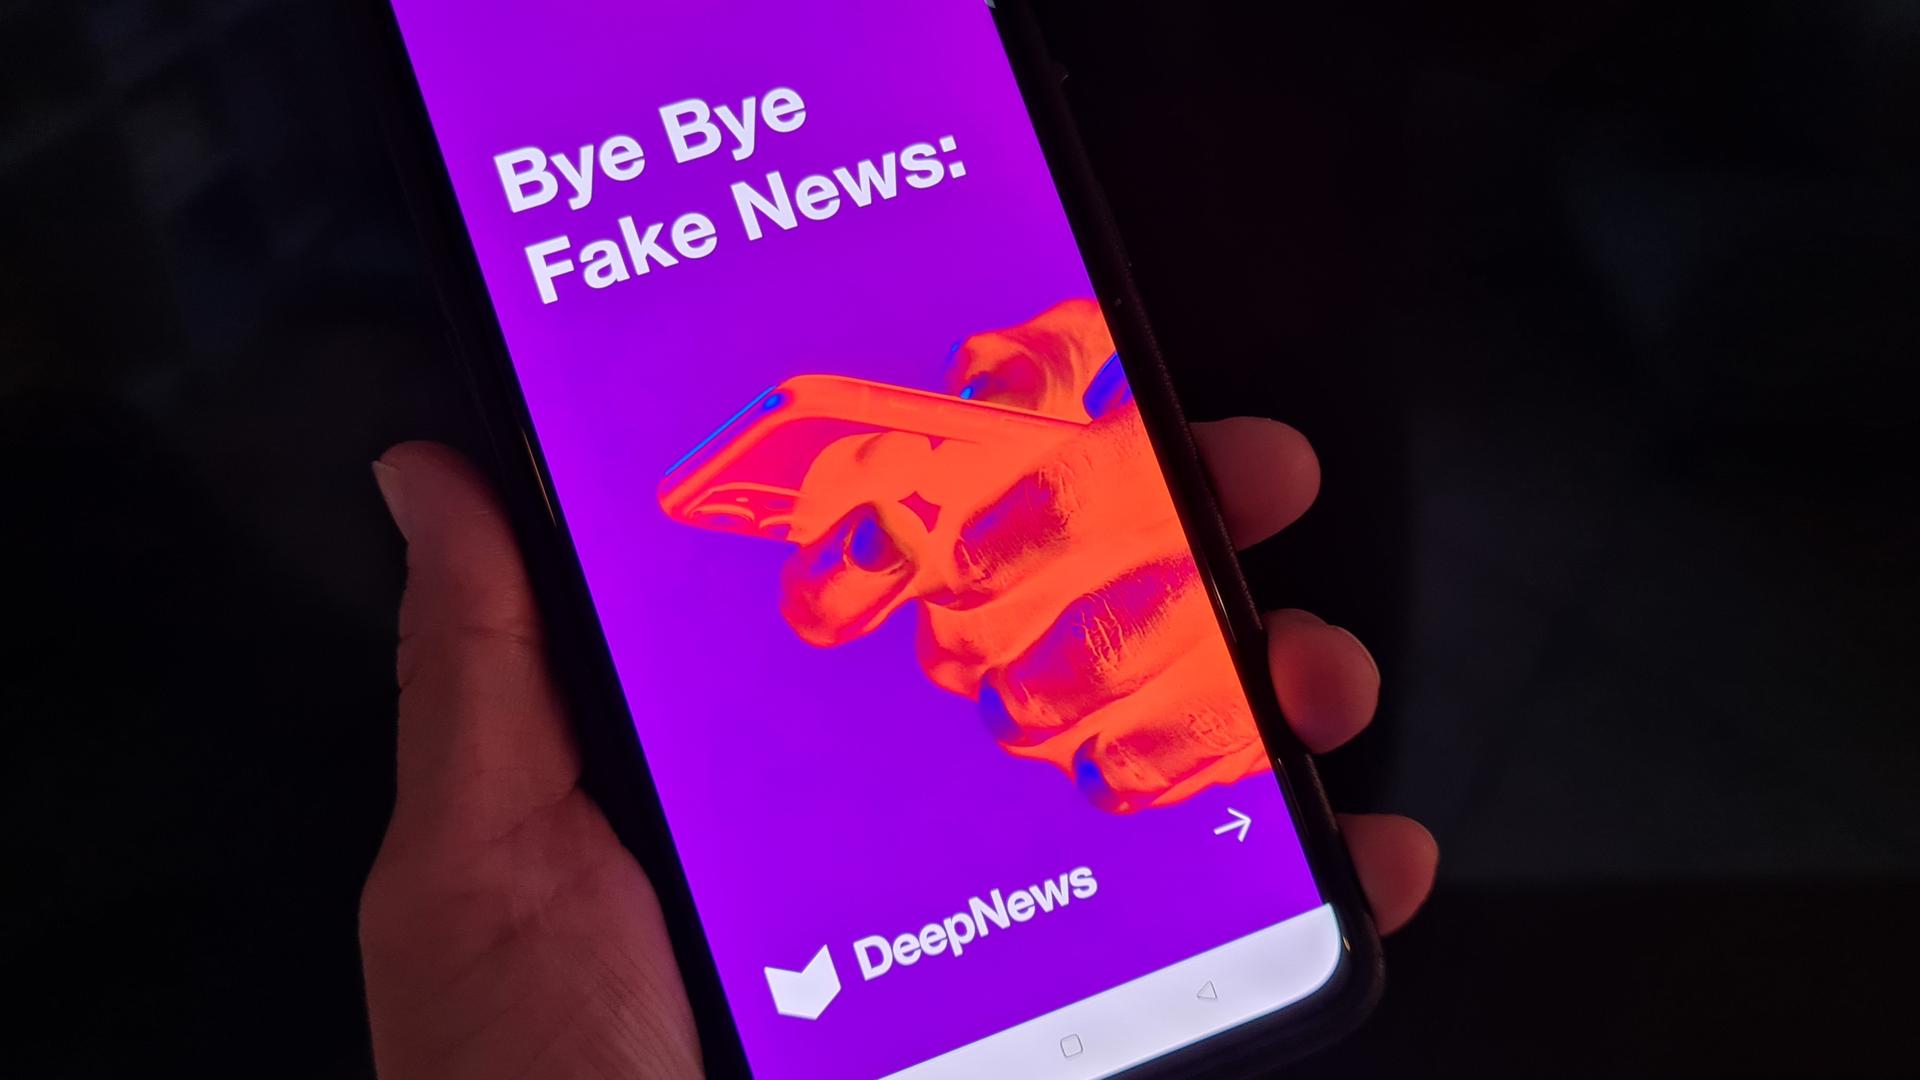 Die App "DeepNews" ist auf einem Smartphonebildschirm zu sehen